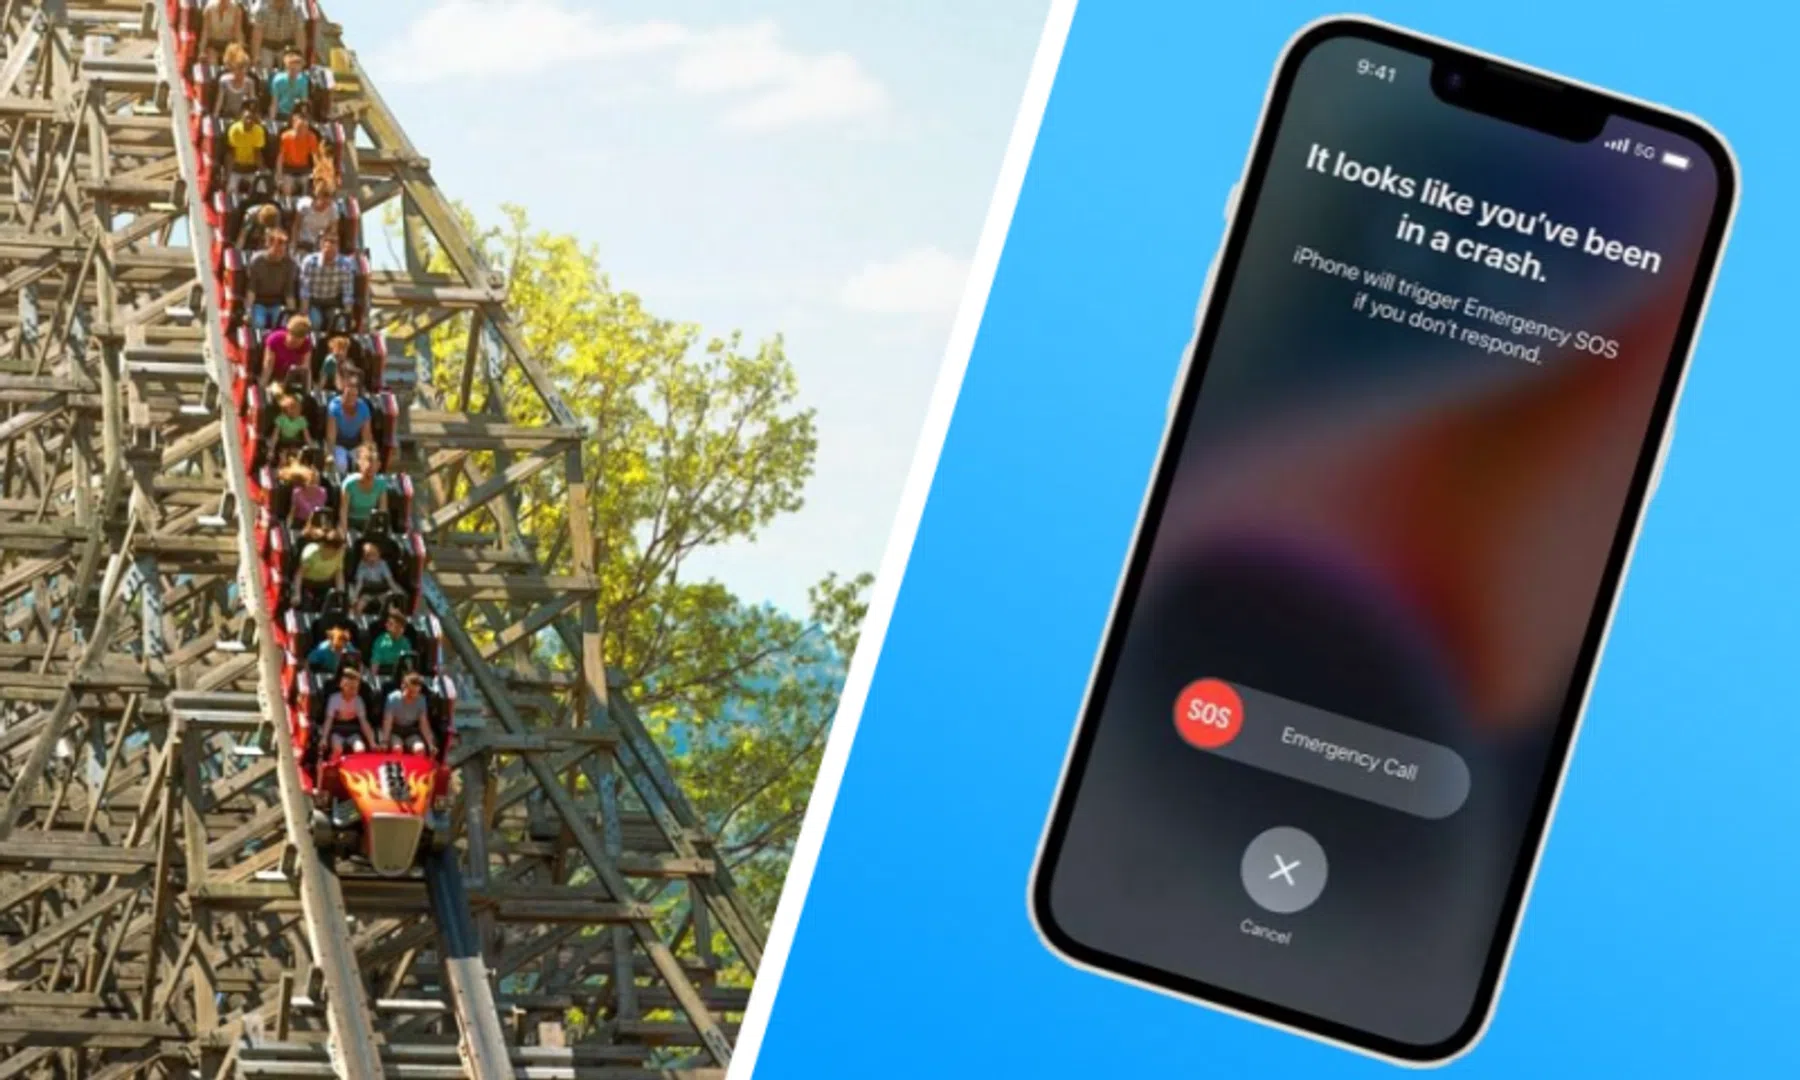 iPhone apple watch ongelukdetectie car crash detection achtbaan roller coaster